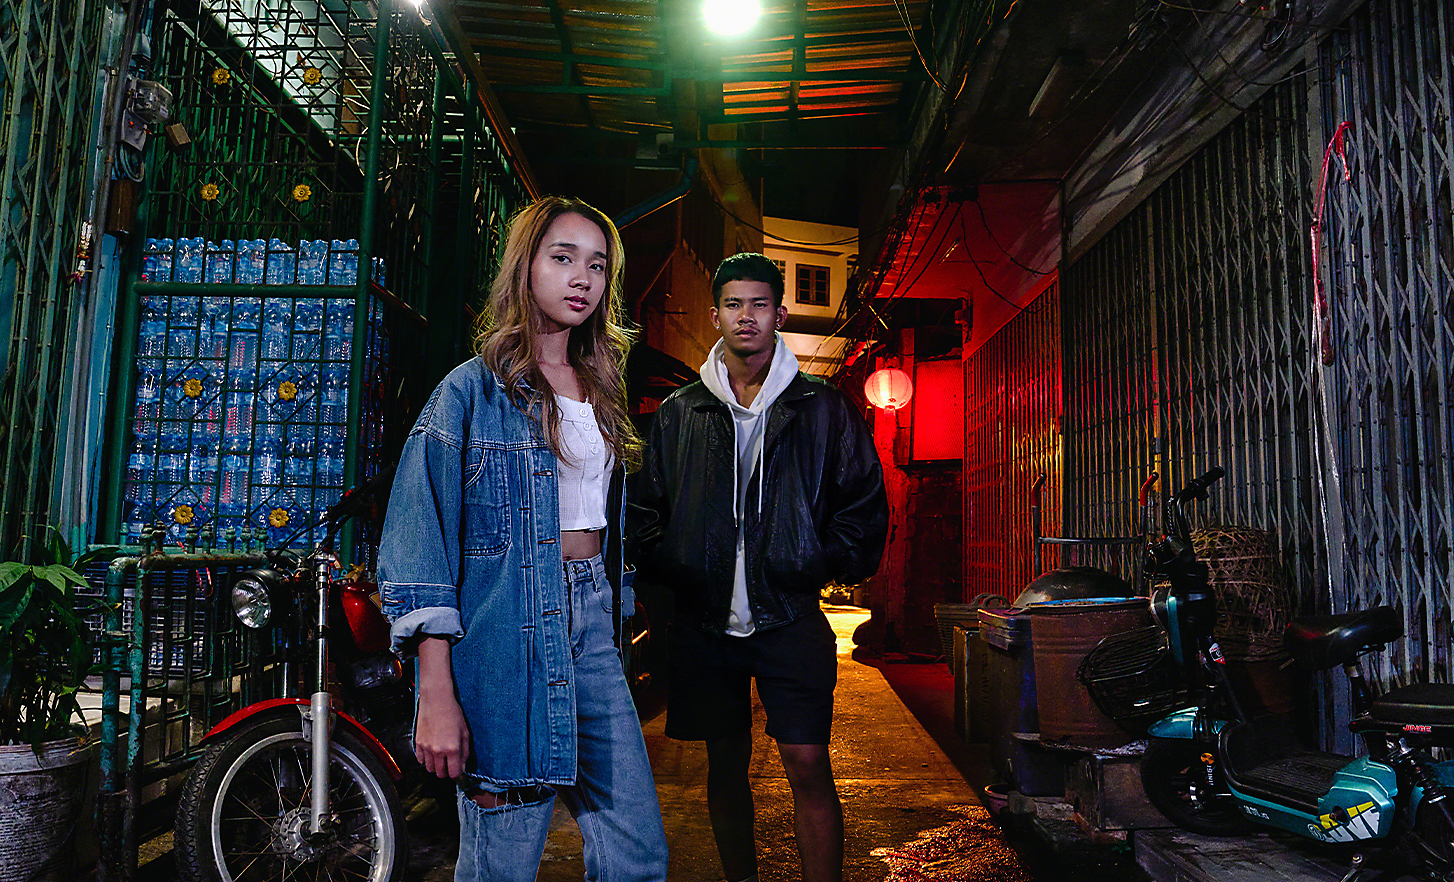 Portret cu două persoane tinere, într-o zonă urbană cu iluminare scăzută